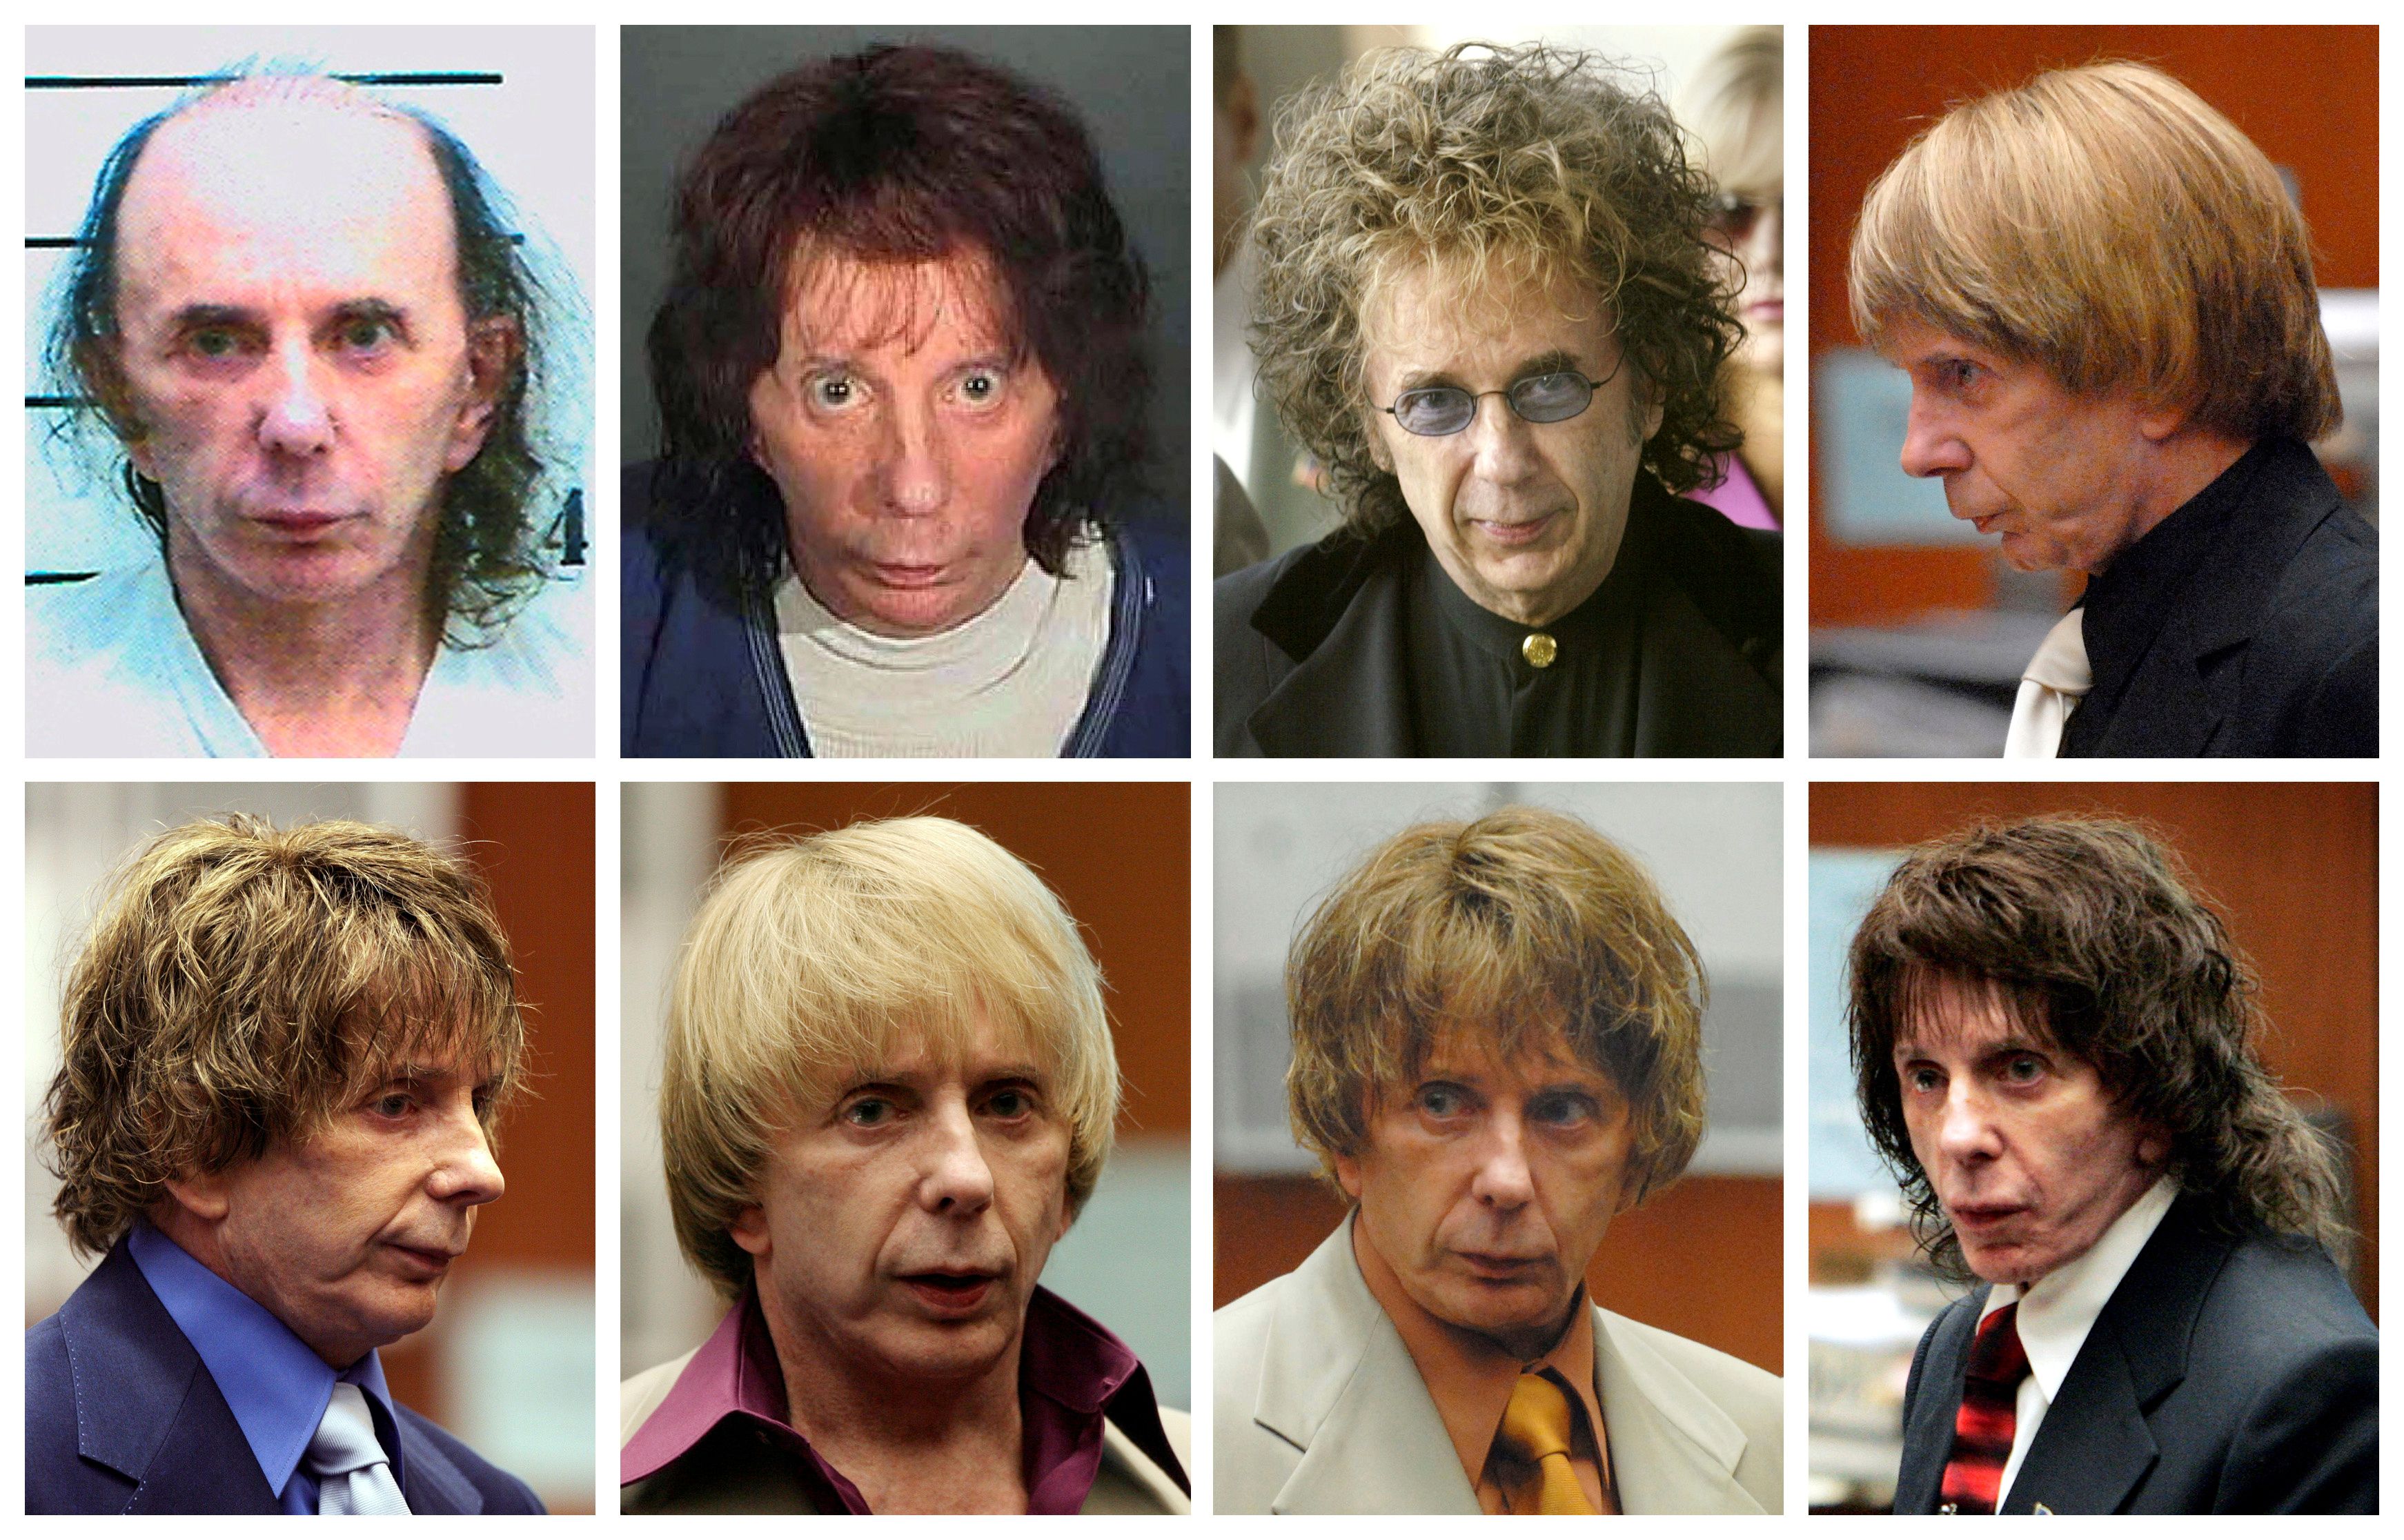 Durante el juicio por el asesinato de Lana Clarkson Phil Spector varió sus looks y peinados, quería seguir siendo el centro de atracción
. REUTERS/Files/File Photo